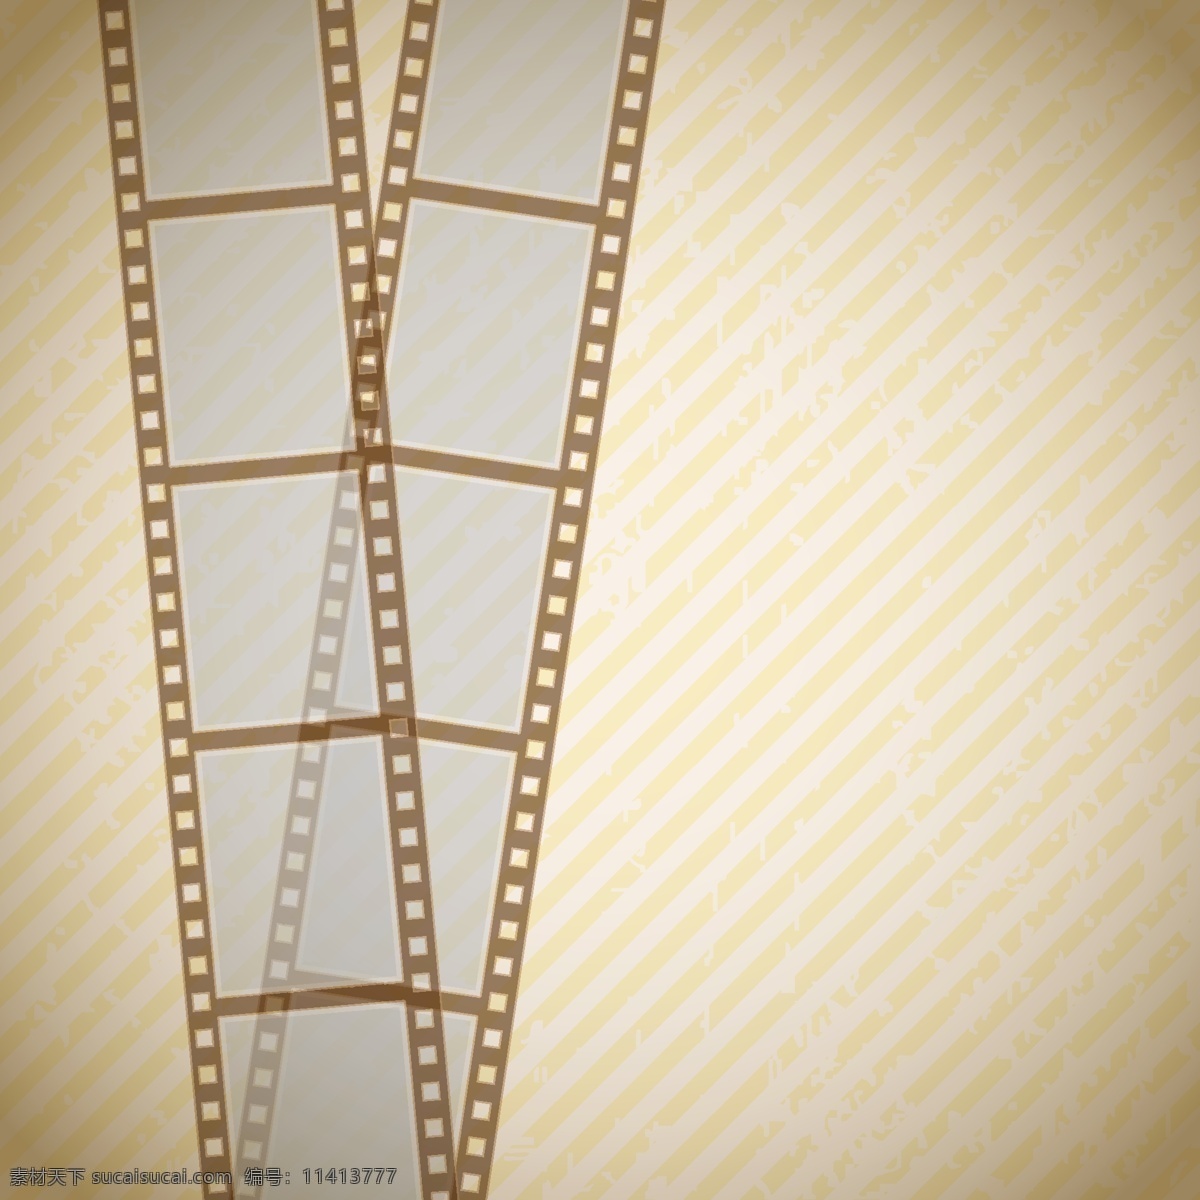 胶片背景 电影胶片背景 电影胶片 电影设计 电影用具 动感 电影 胶卷 影带 胶片 磁带 线条 曲线